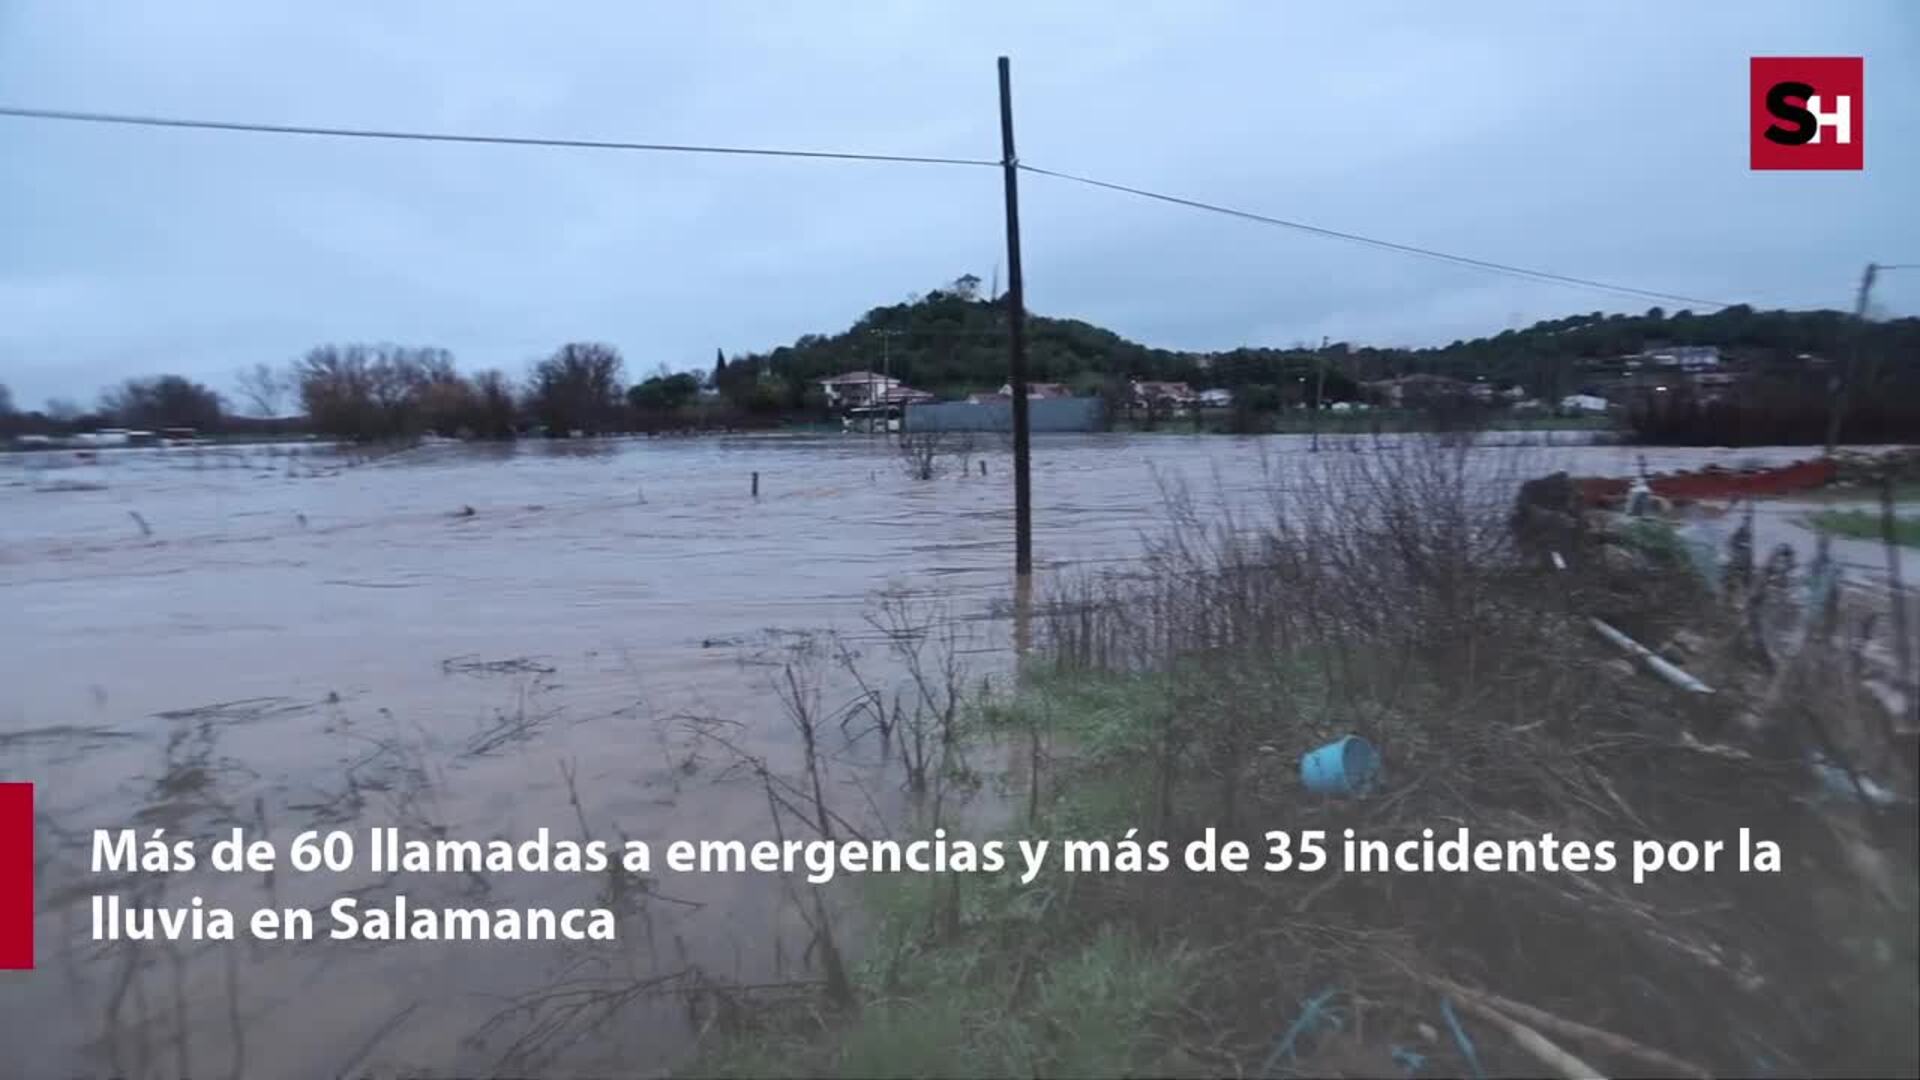 Alarma en Salamanca por la lluvia con más de 60 llamadas a emergencias